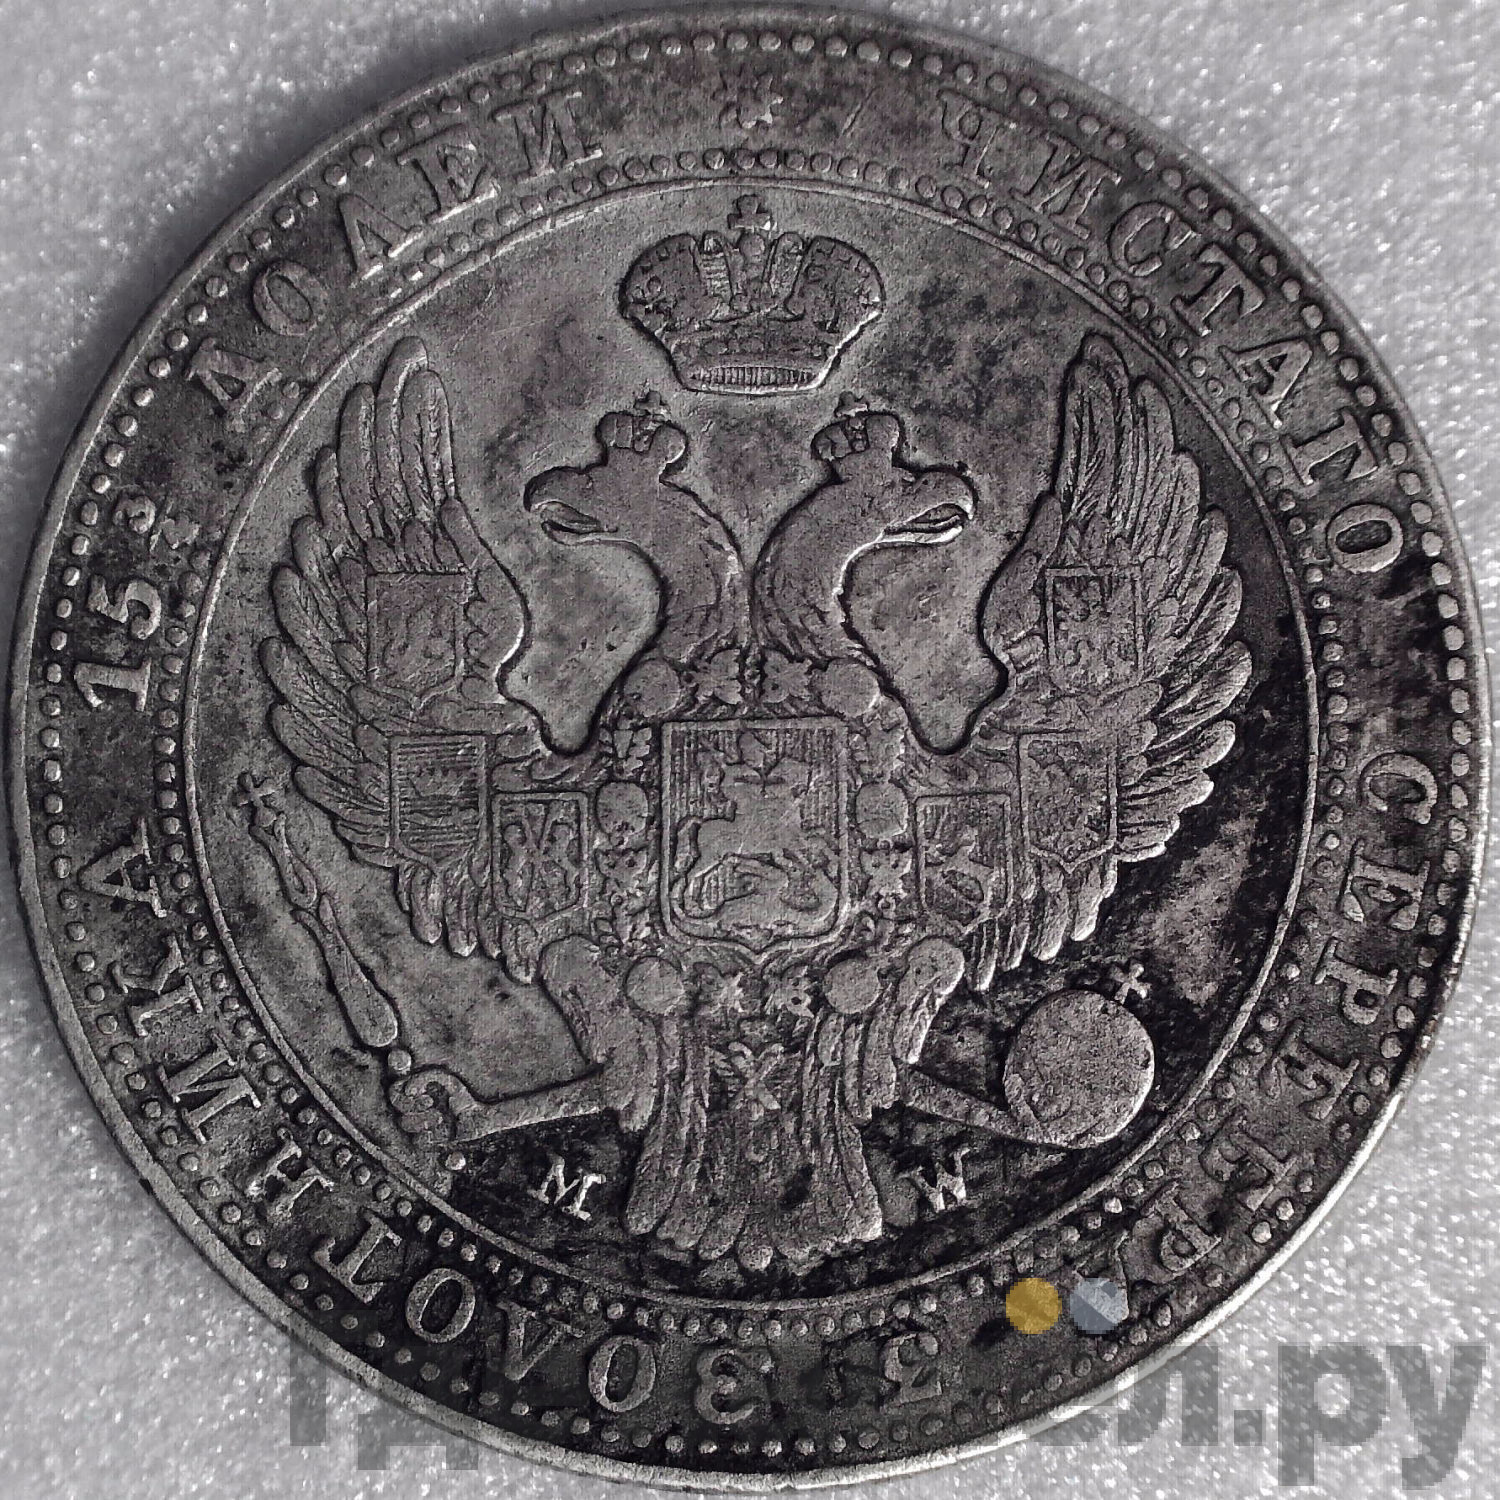 3/4 рубля - 5 злотых 1837 года